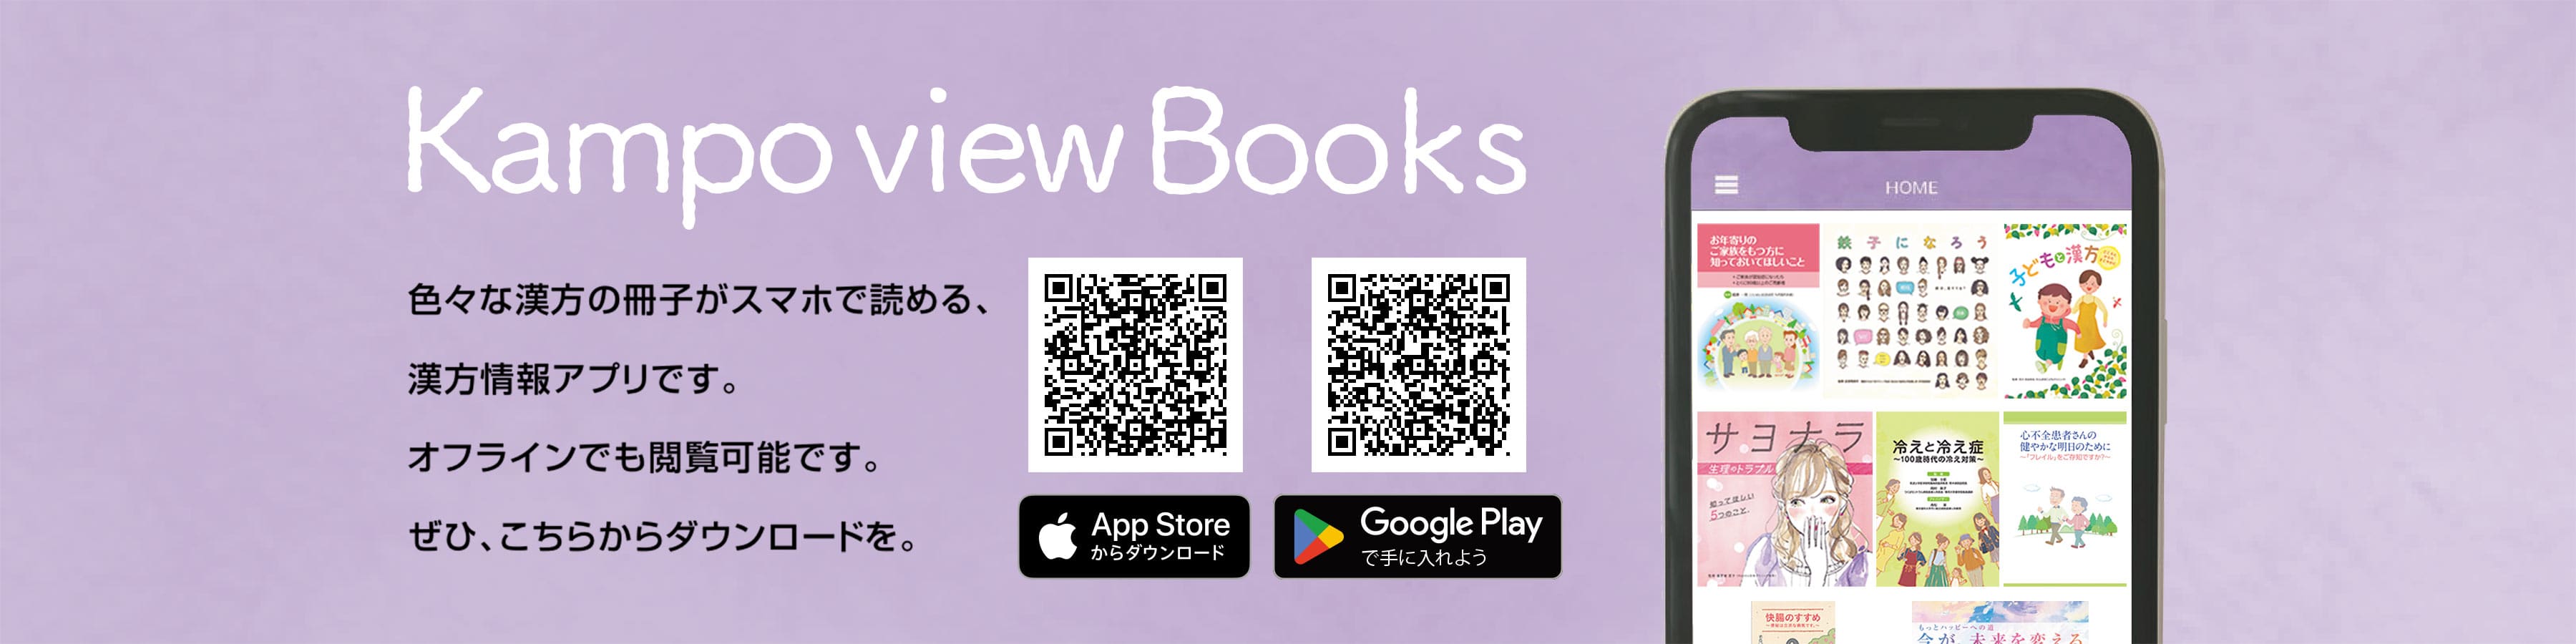 こちらから漢方情報アプリ「Kampo view Books」をダウンロードをいただけます。